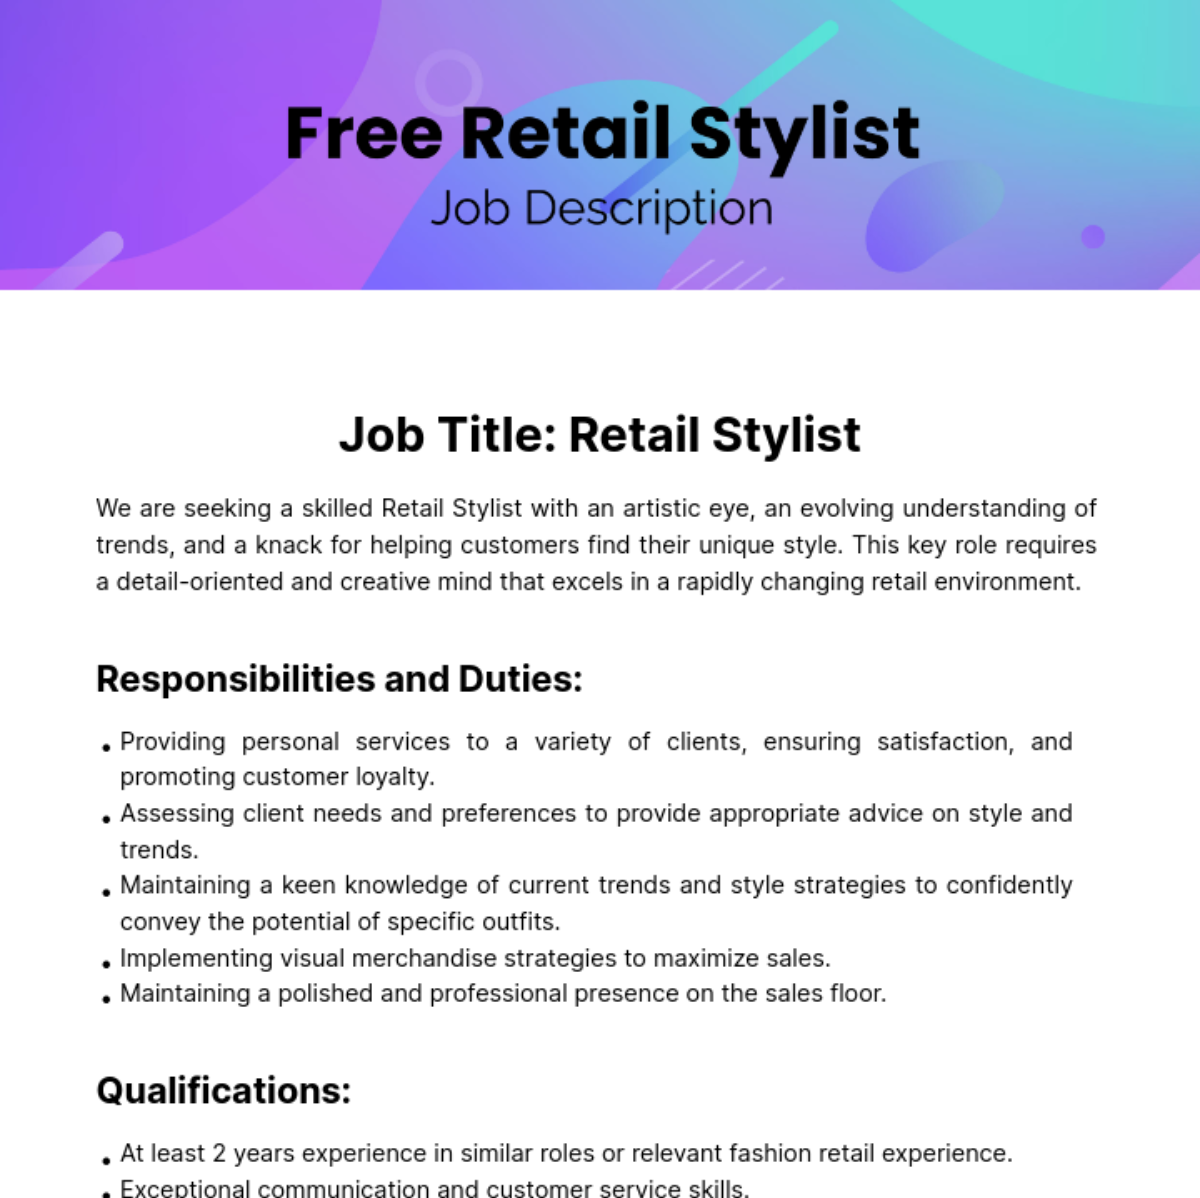 Free Retail Stylist Job Description Template